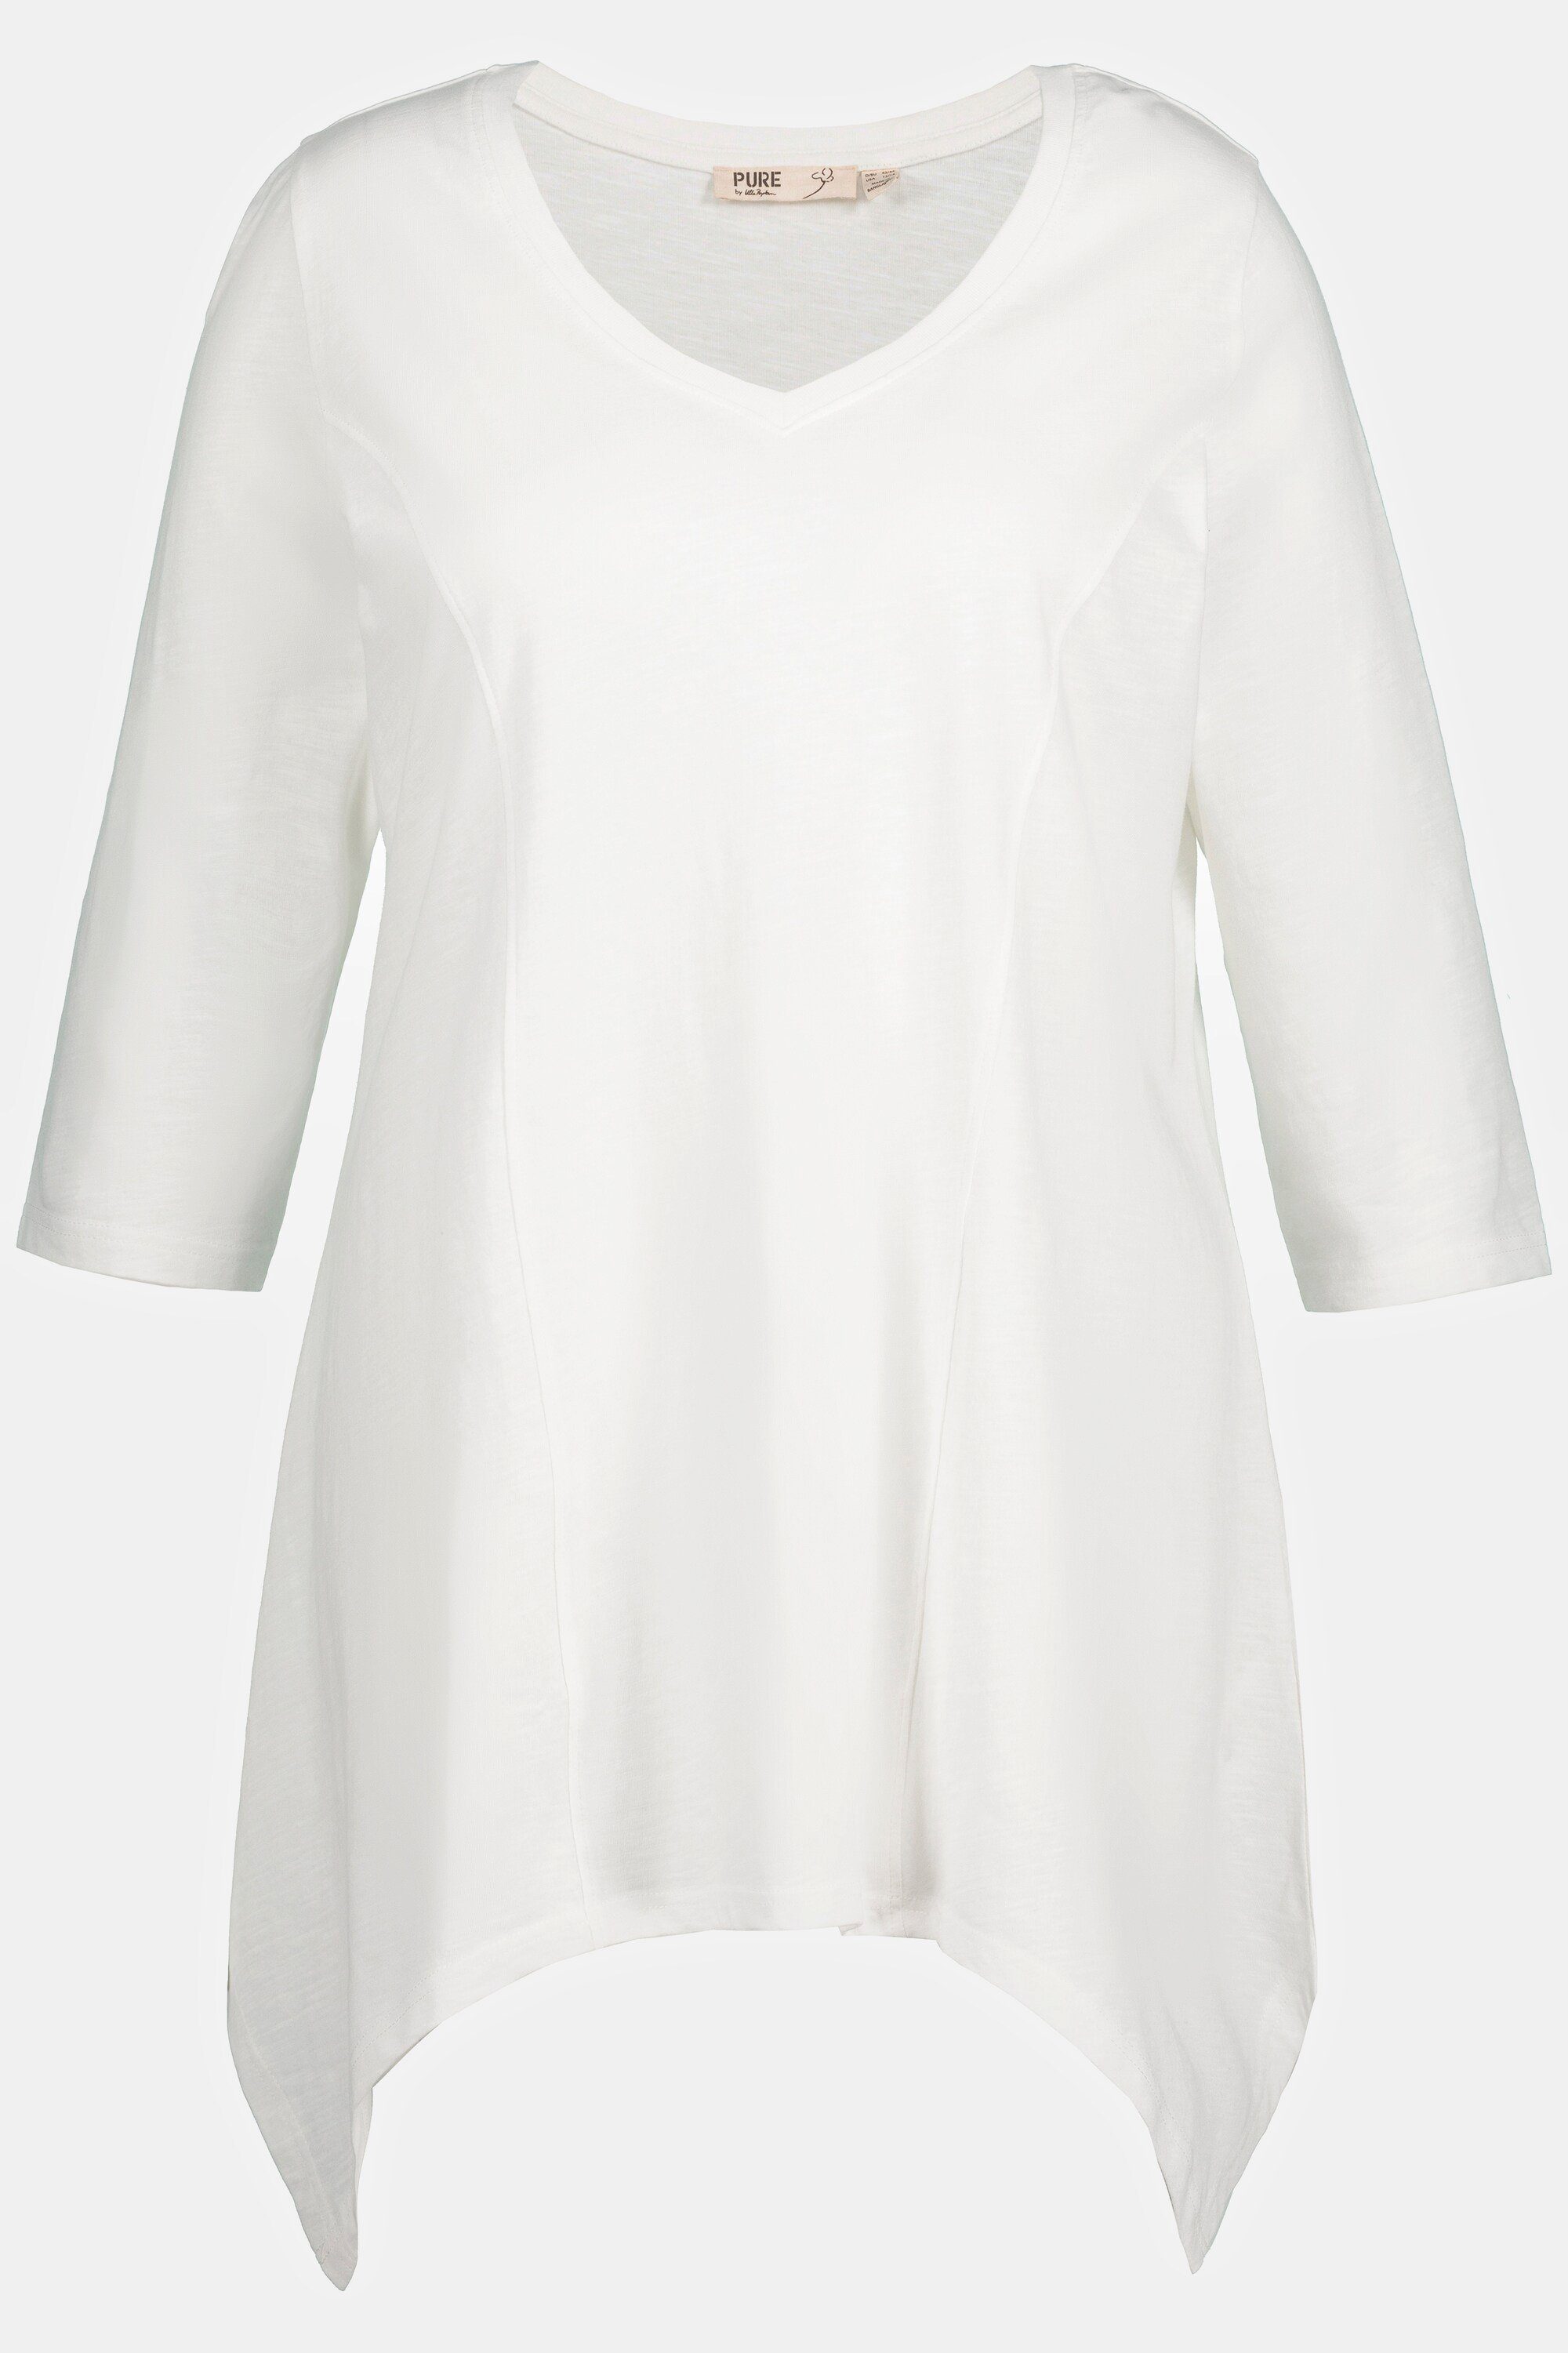 Zipfelsaum offwhite V-Ausschnitt Popken Biobaumwolle Rundhalsshirt Ulla 3/4-Arm Shirt